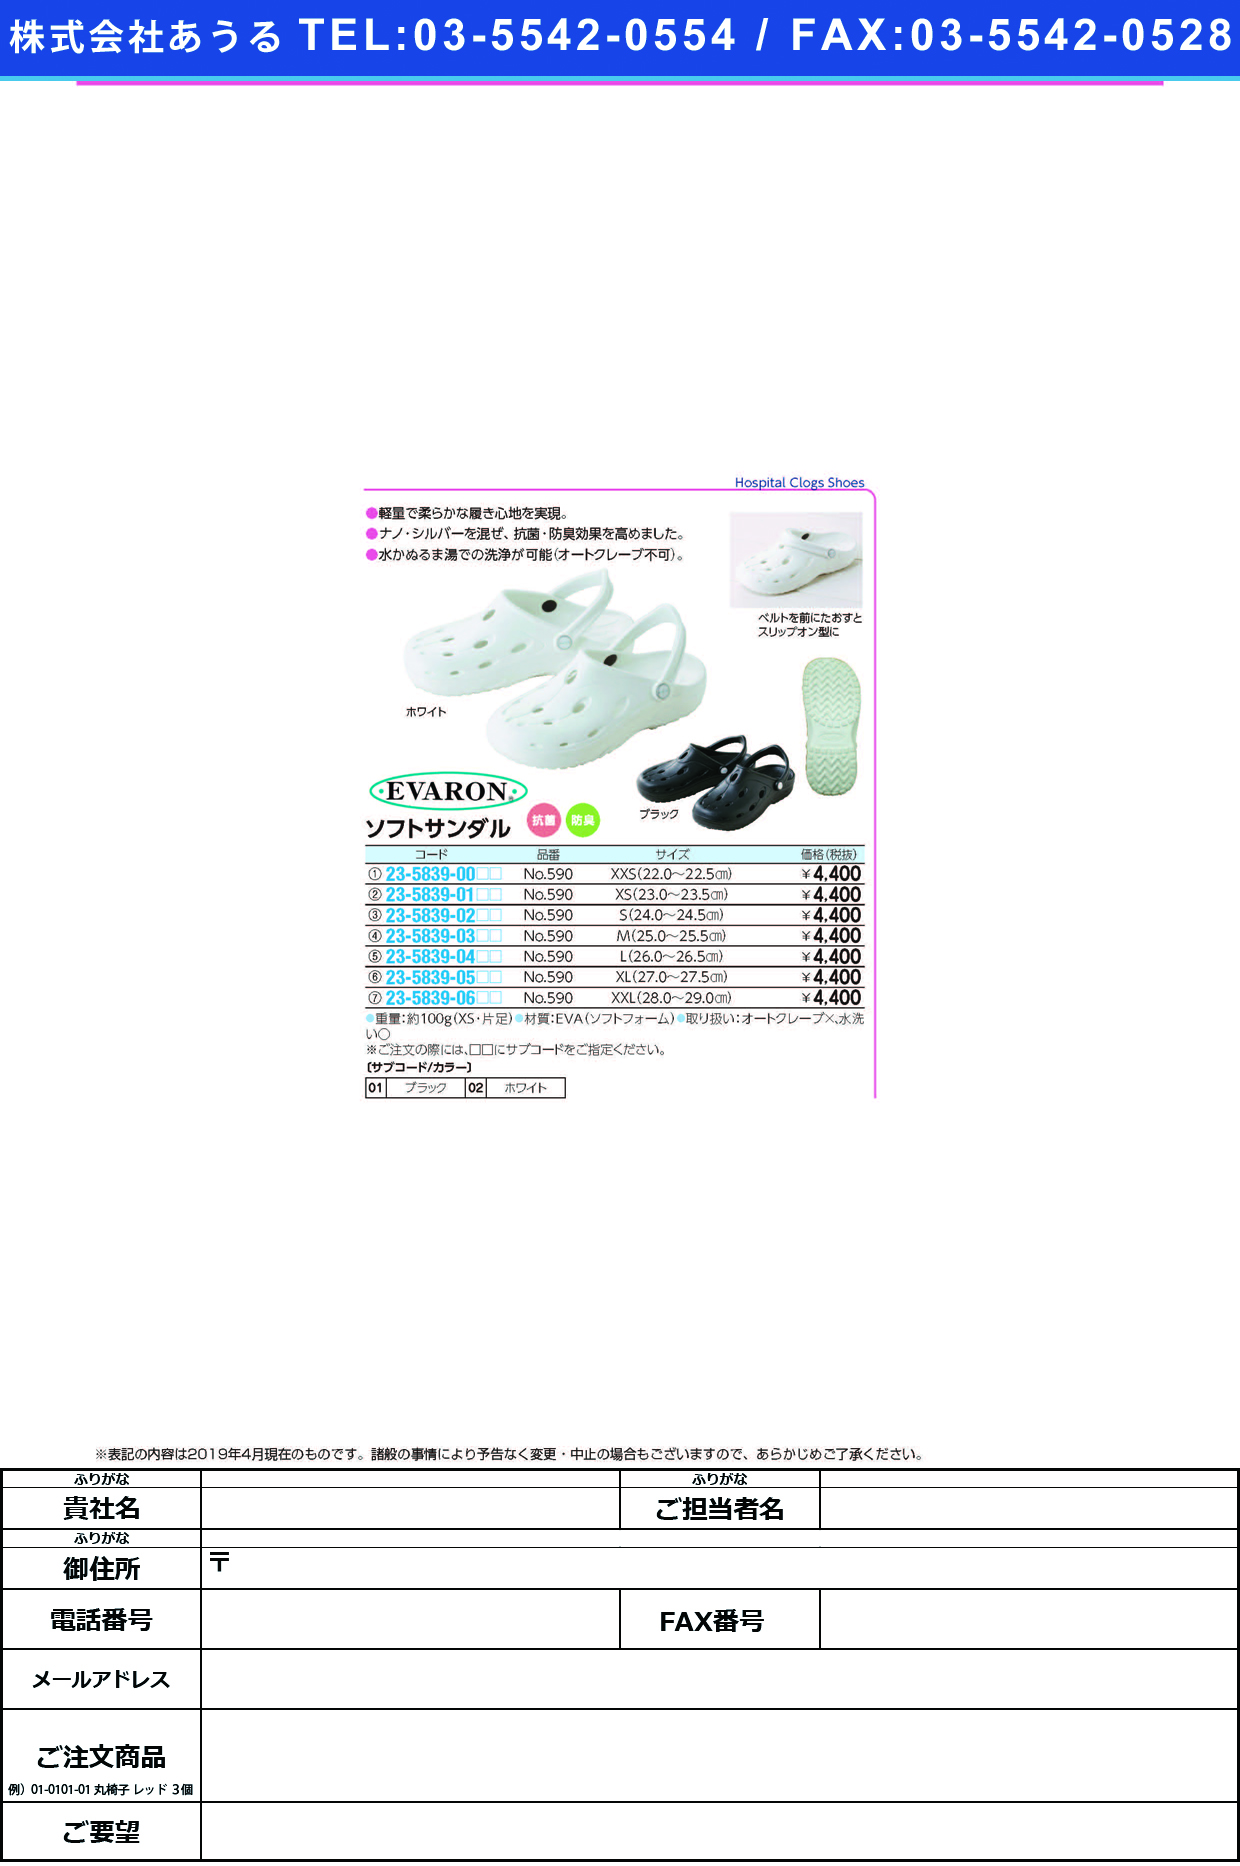 (23-5839-01)ソフトサンダル NO.590(XS/23-23.5CM) ｿﾌﾄｻﾝﾀﾞﾙ ブラック【1足単位】【2019年カタログ商品】